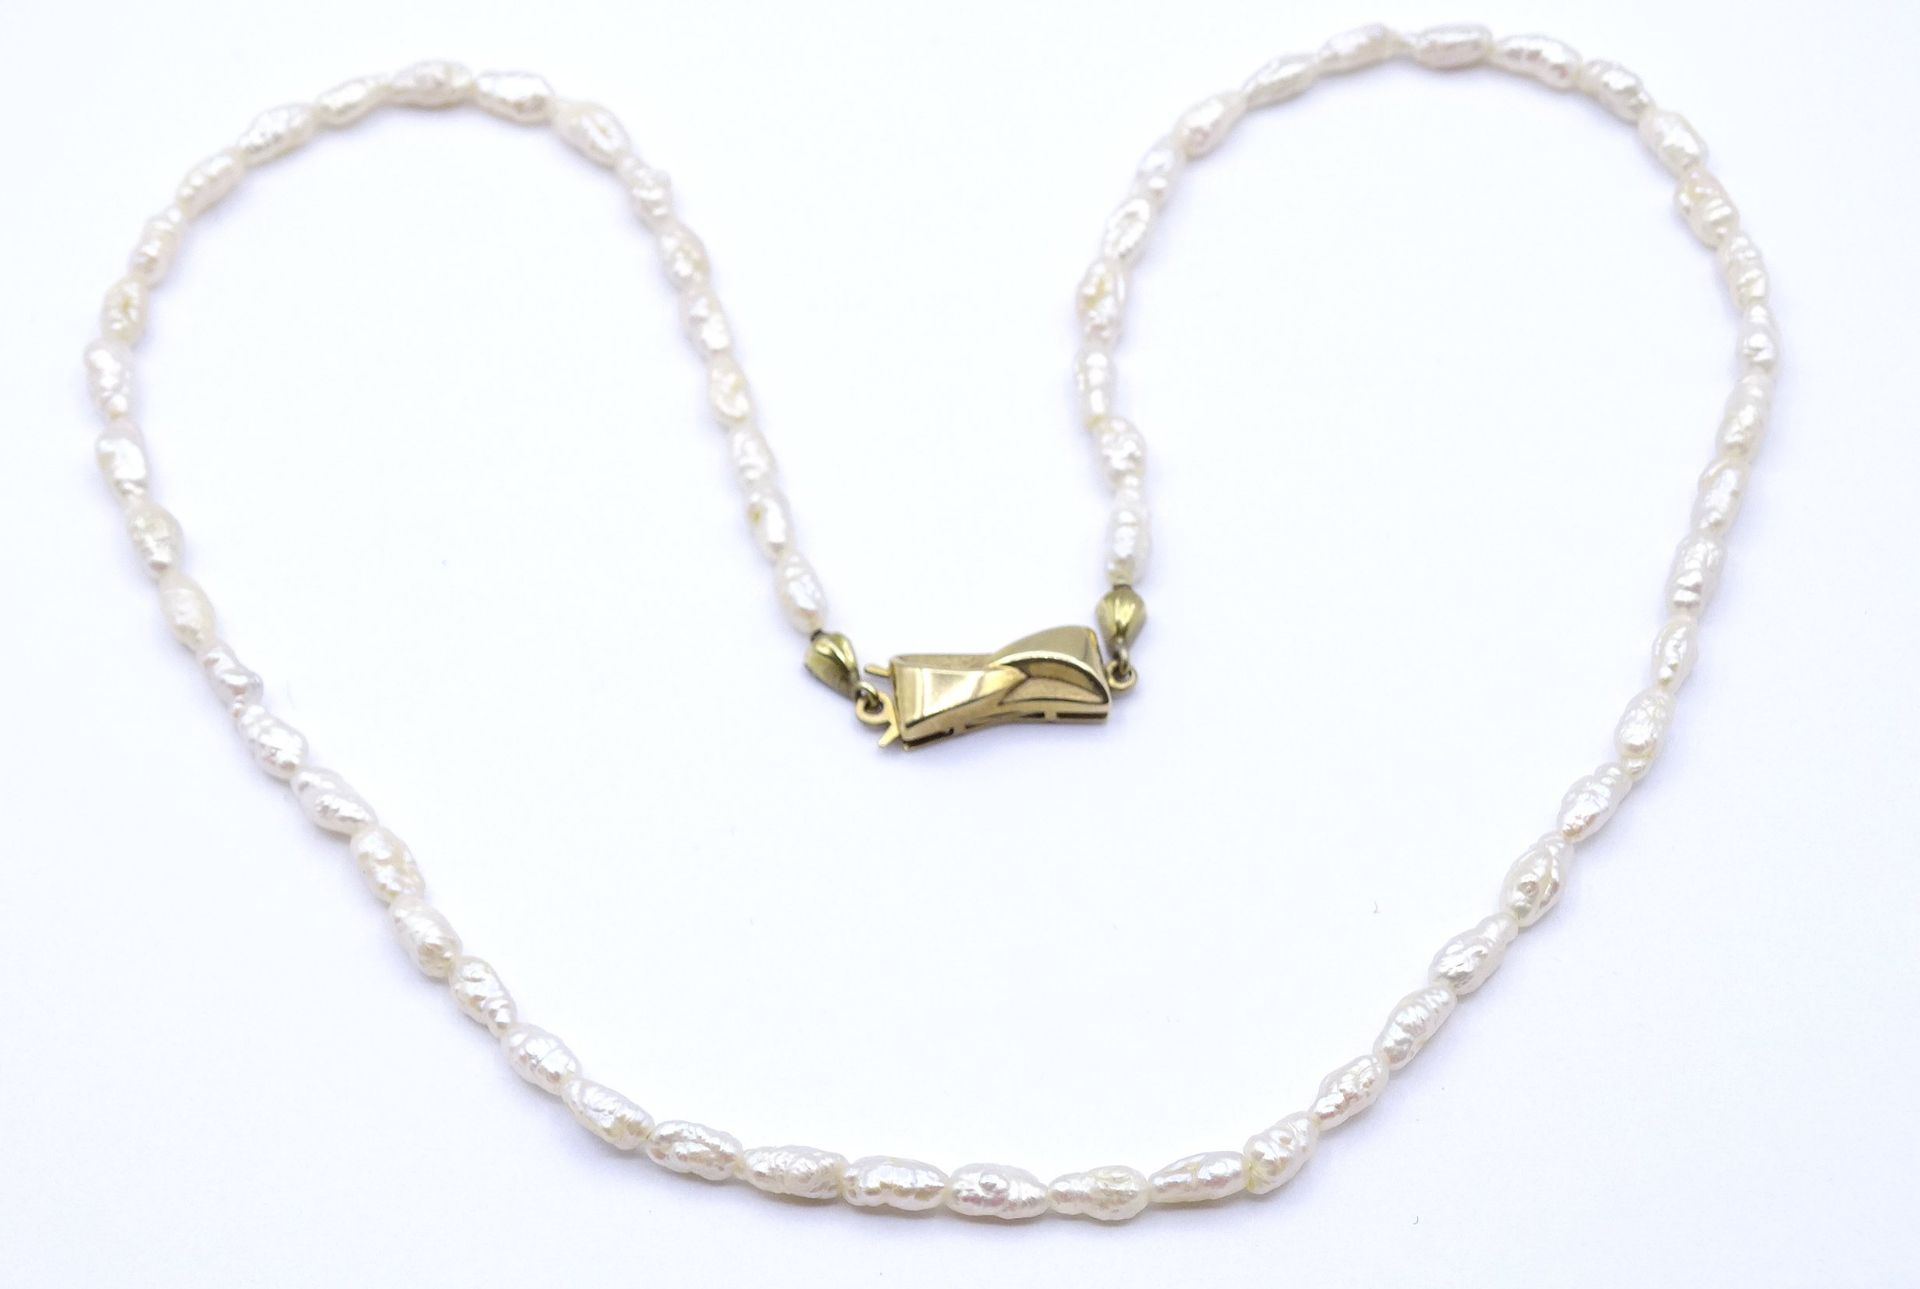 SW - Perlen Halskette mit Goldverschluss 375/000, L. 41cm - Image 5 of 6